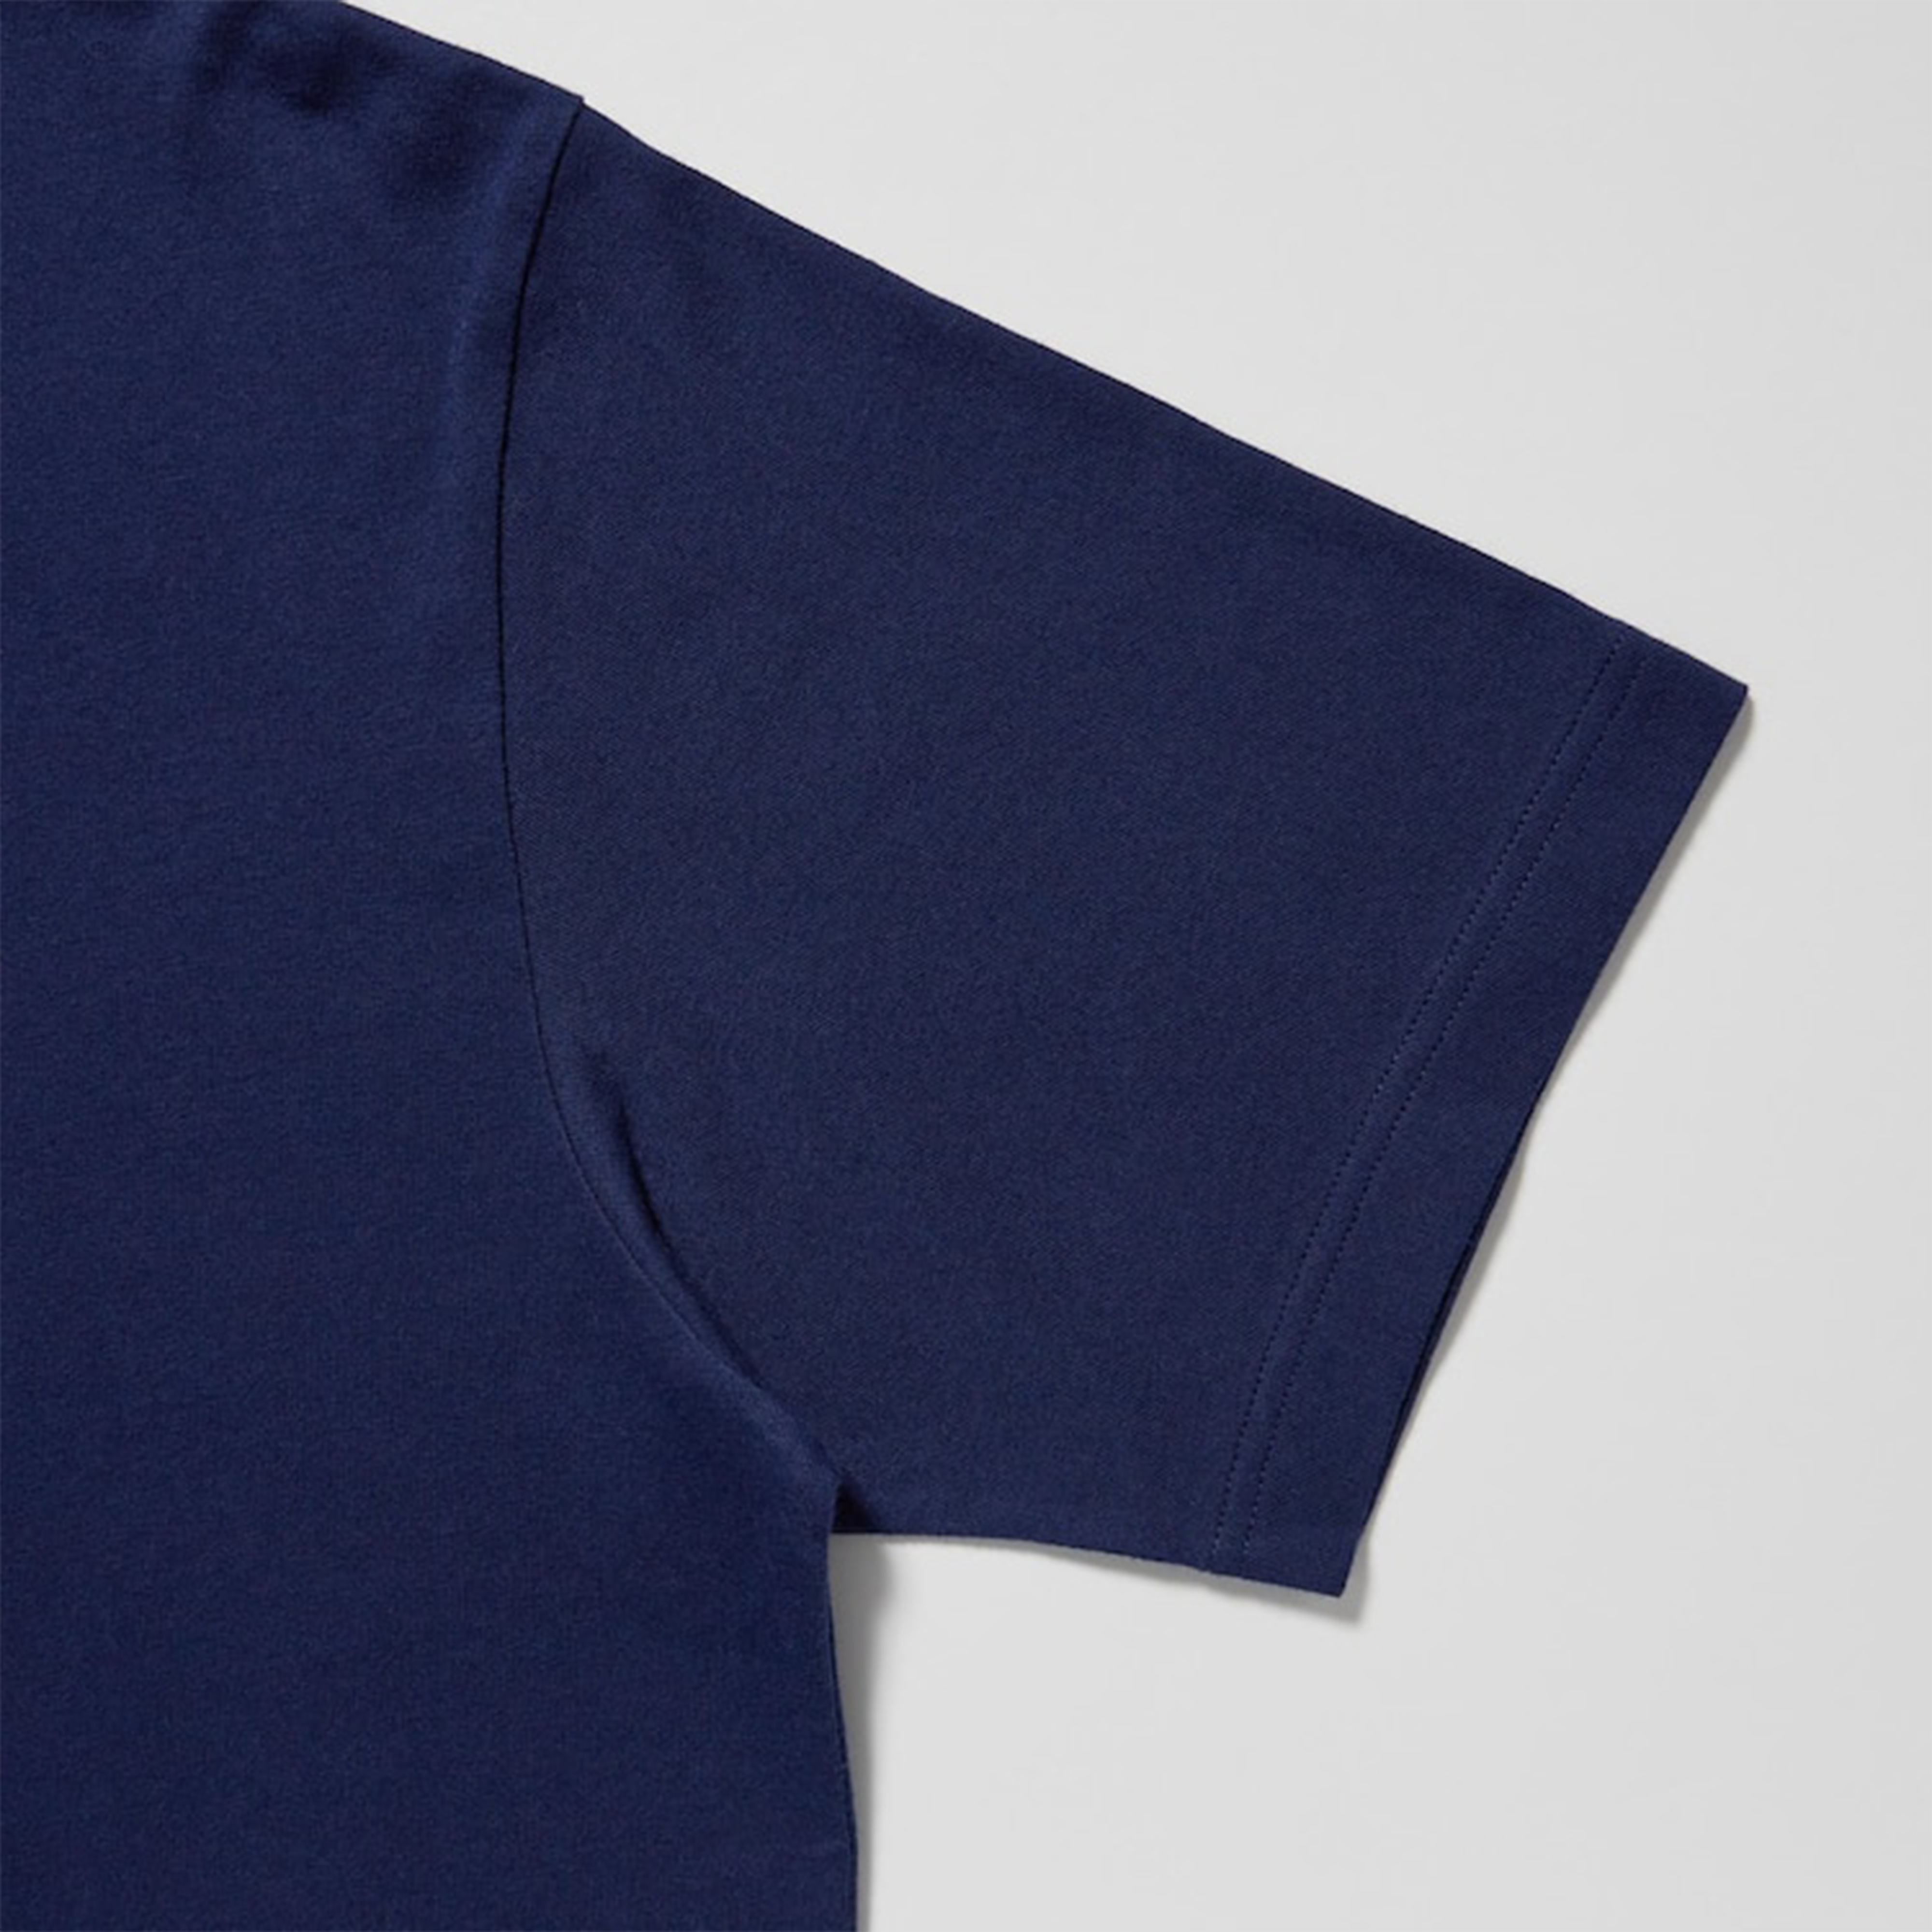 BEARBRICK BLUE T-SHIRT / NAVY